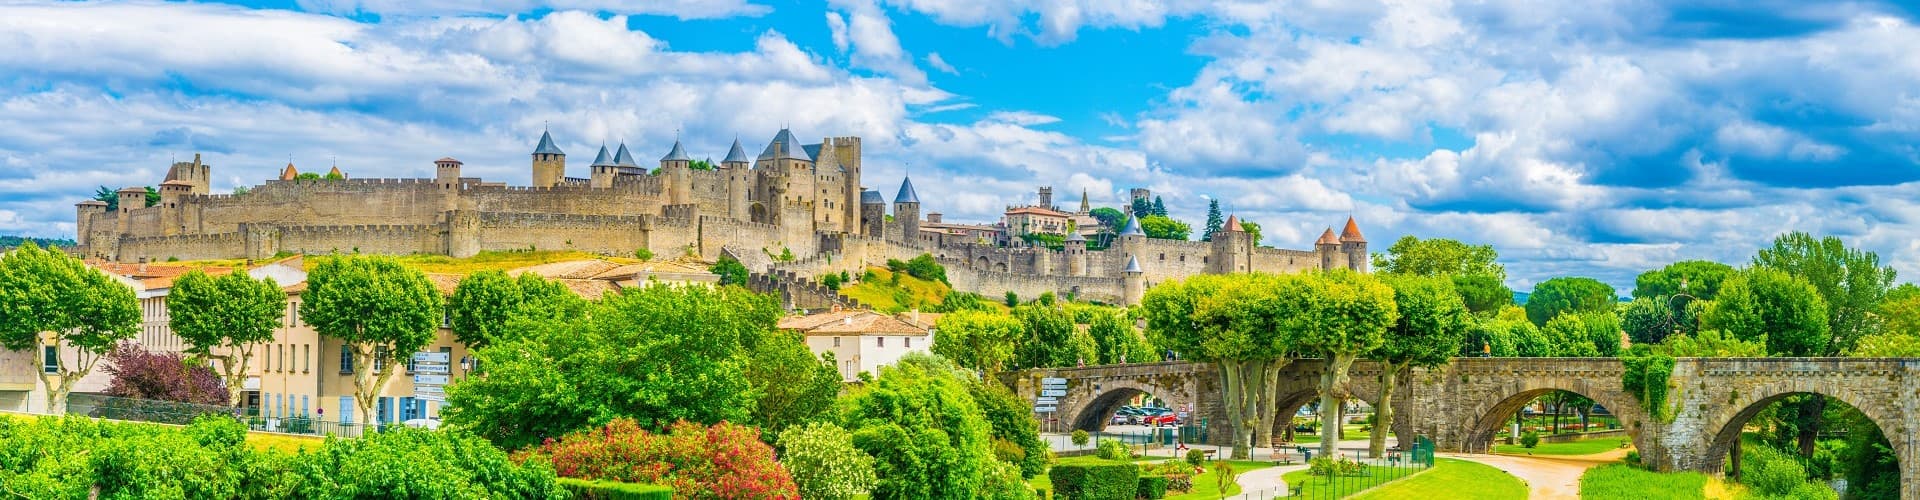 Carcassonne Skyline